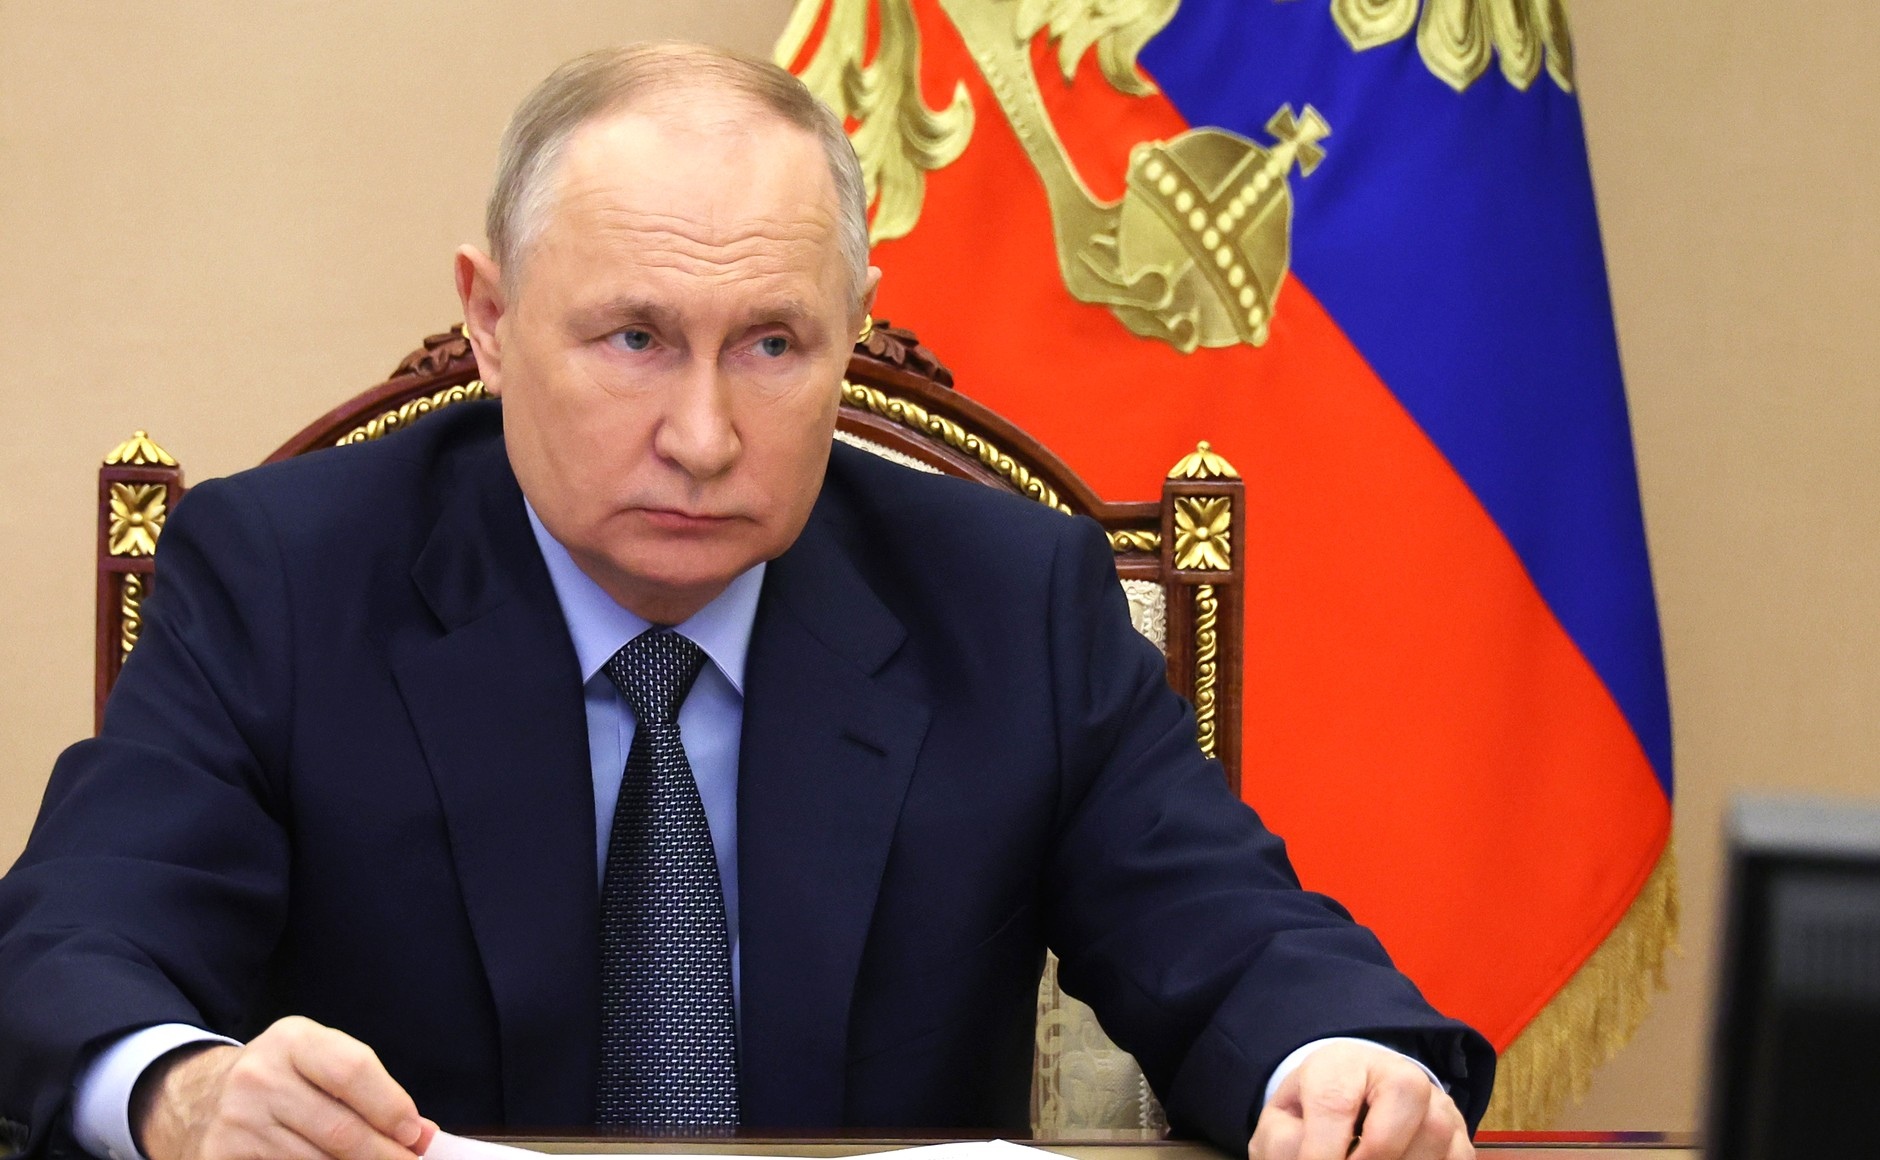 Путин произвел перестановки в судебной системе Марий Эл